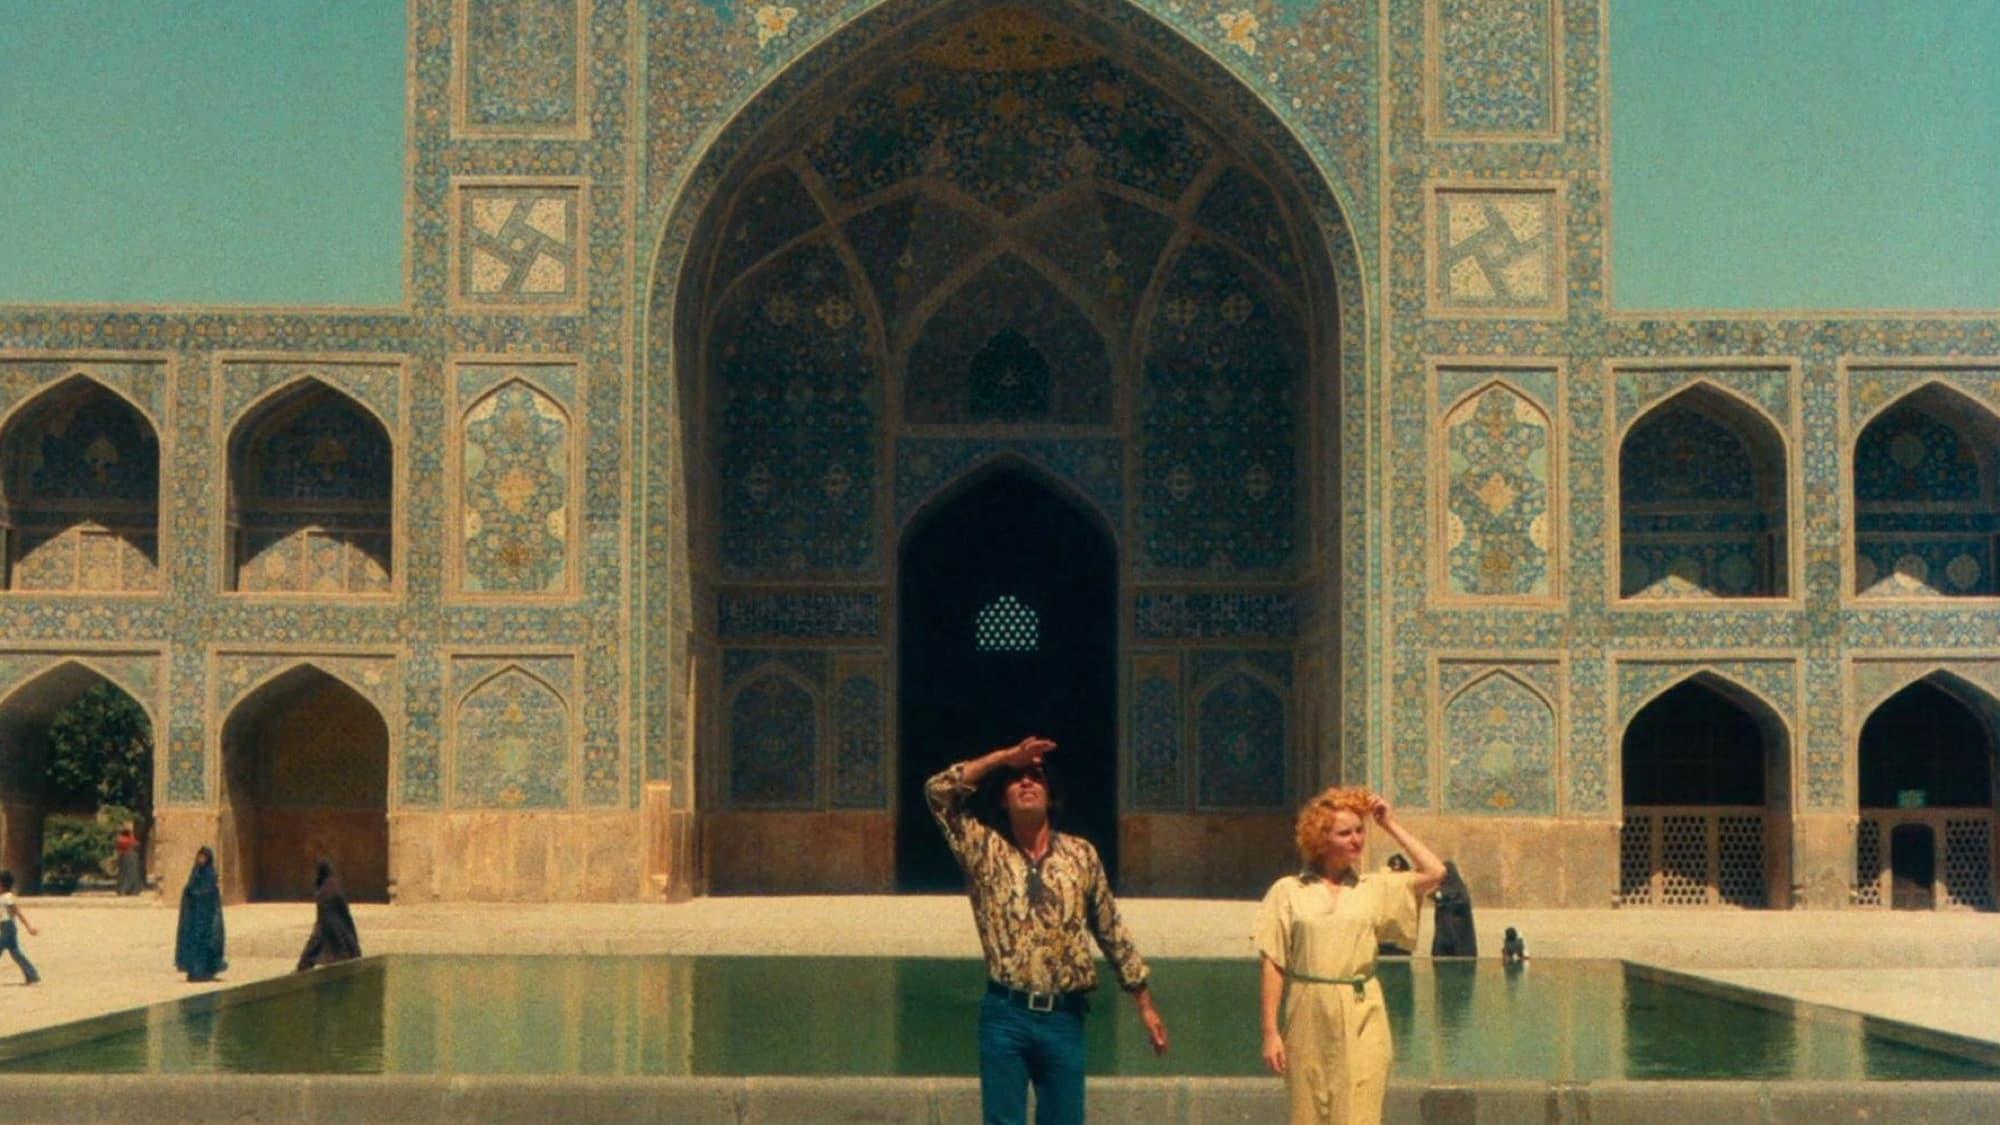 The Pleasure of Love in Iran backdrop